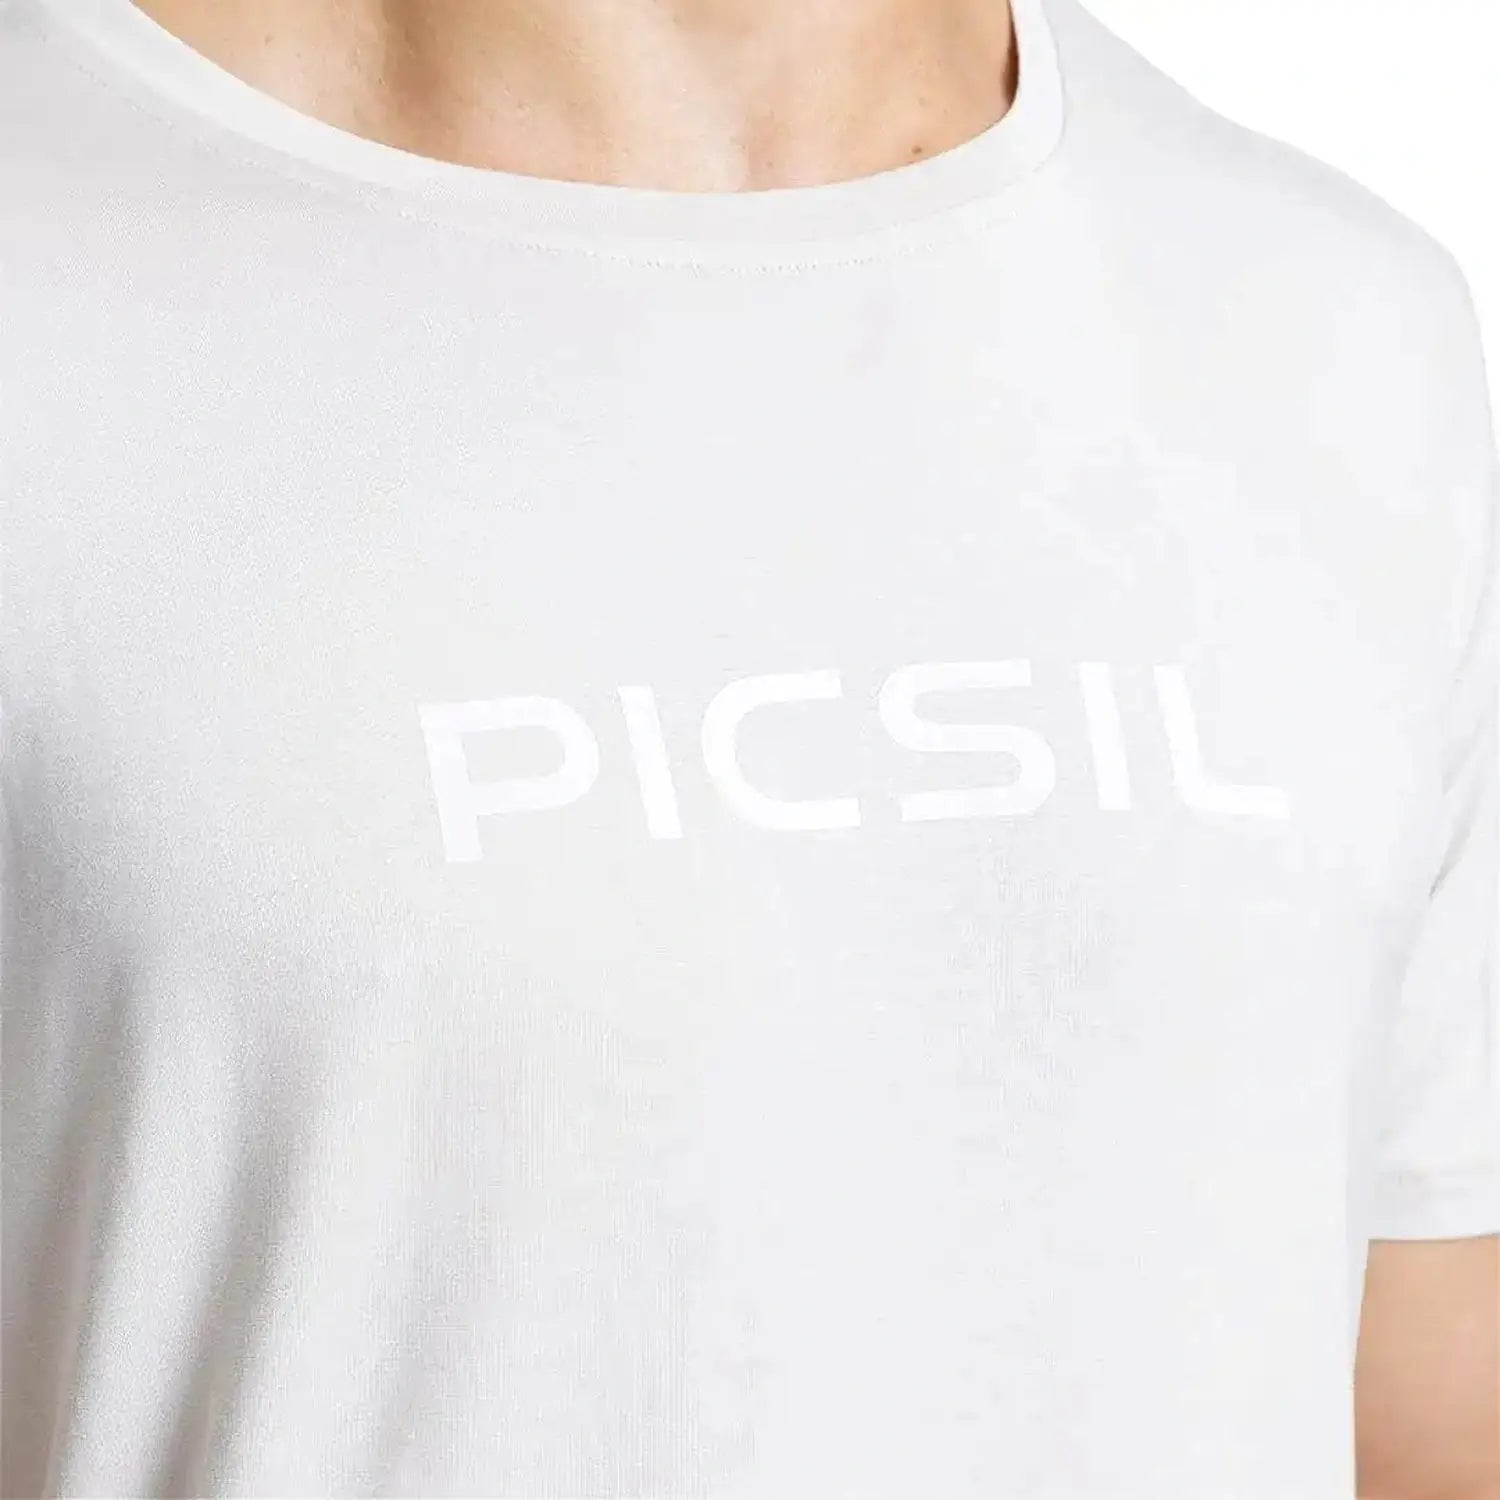 PicSil Herren Sport T-Shirt Kurzarm (Core) Beige kaufen bei HighPowered.ch